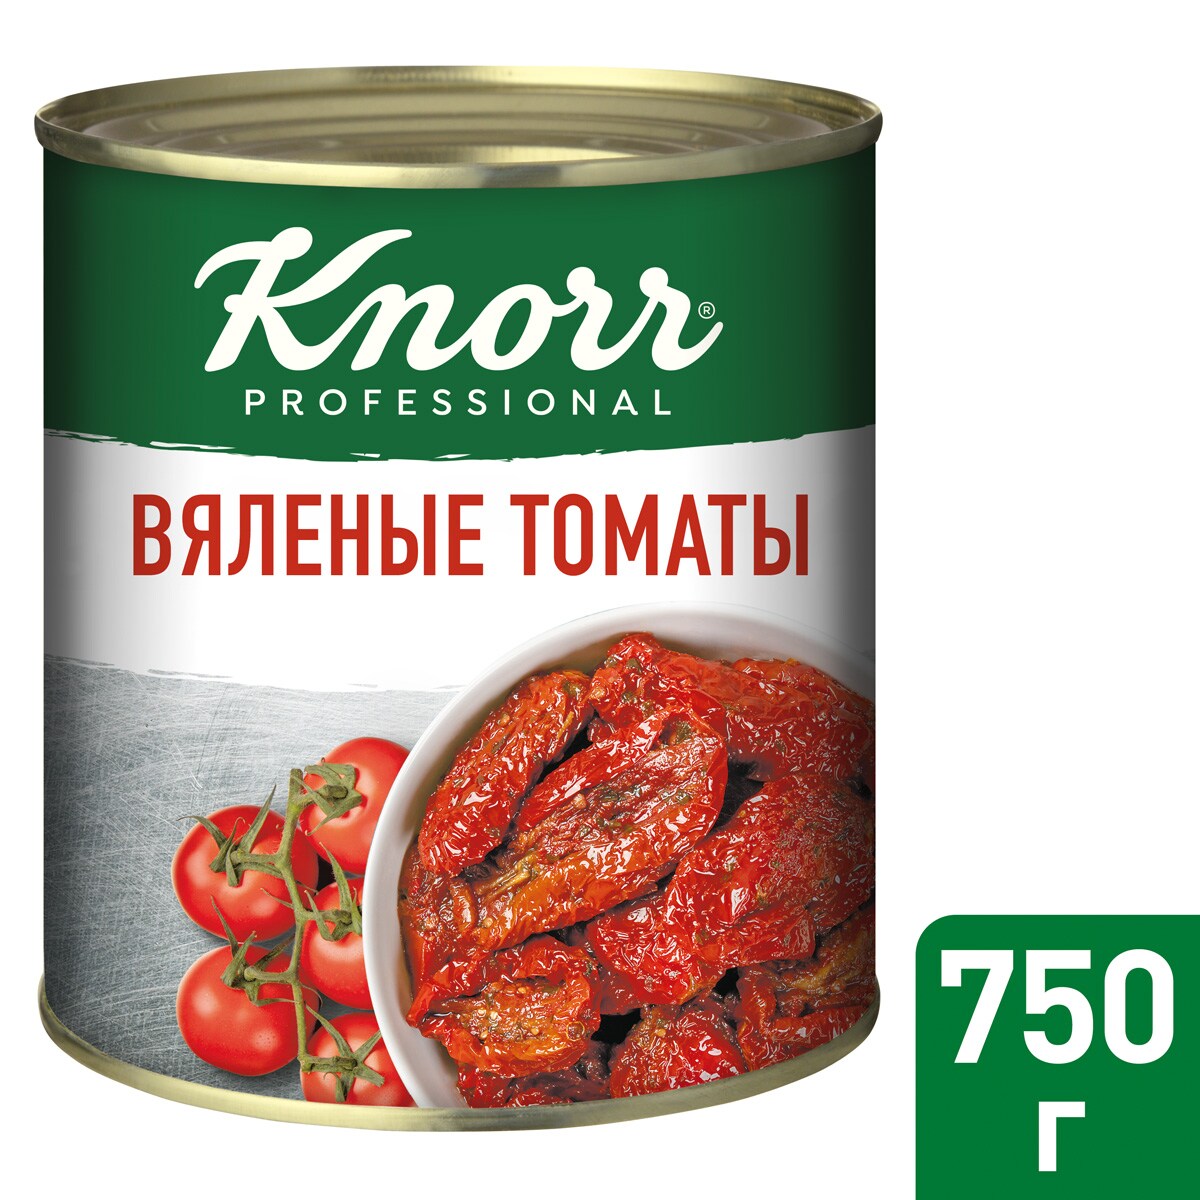 KNORR PROFESSIONAL Консервы Вяленые томаты (750 г) - Сочные итальянские томаты стабильного качества и вкуса!